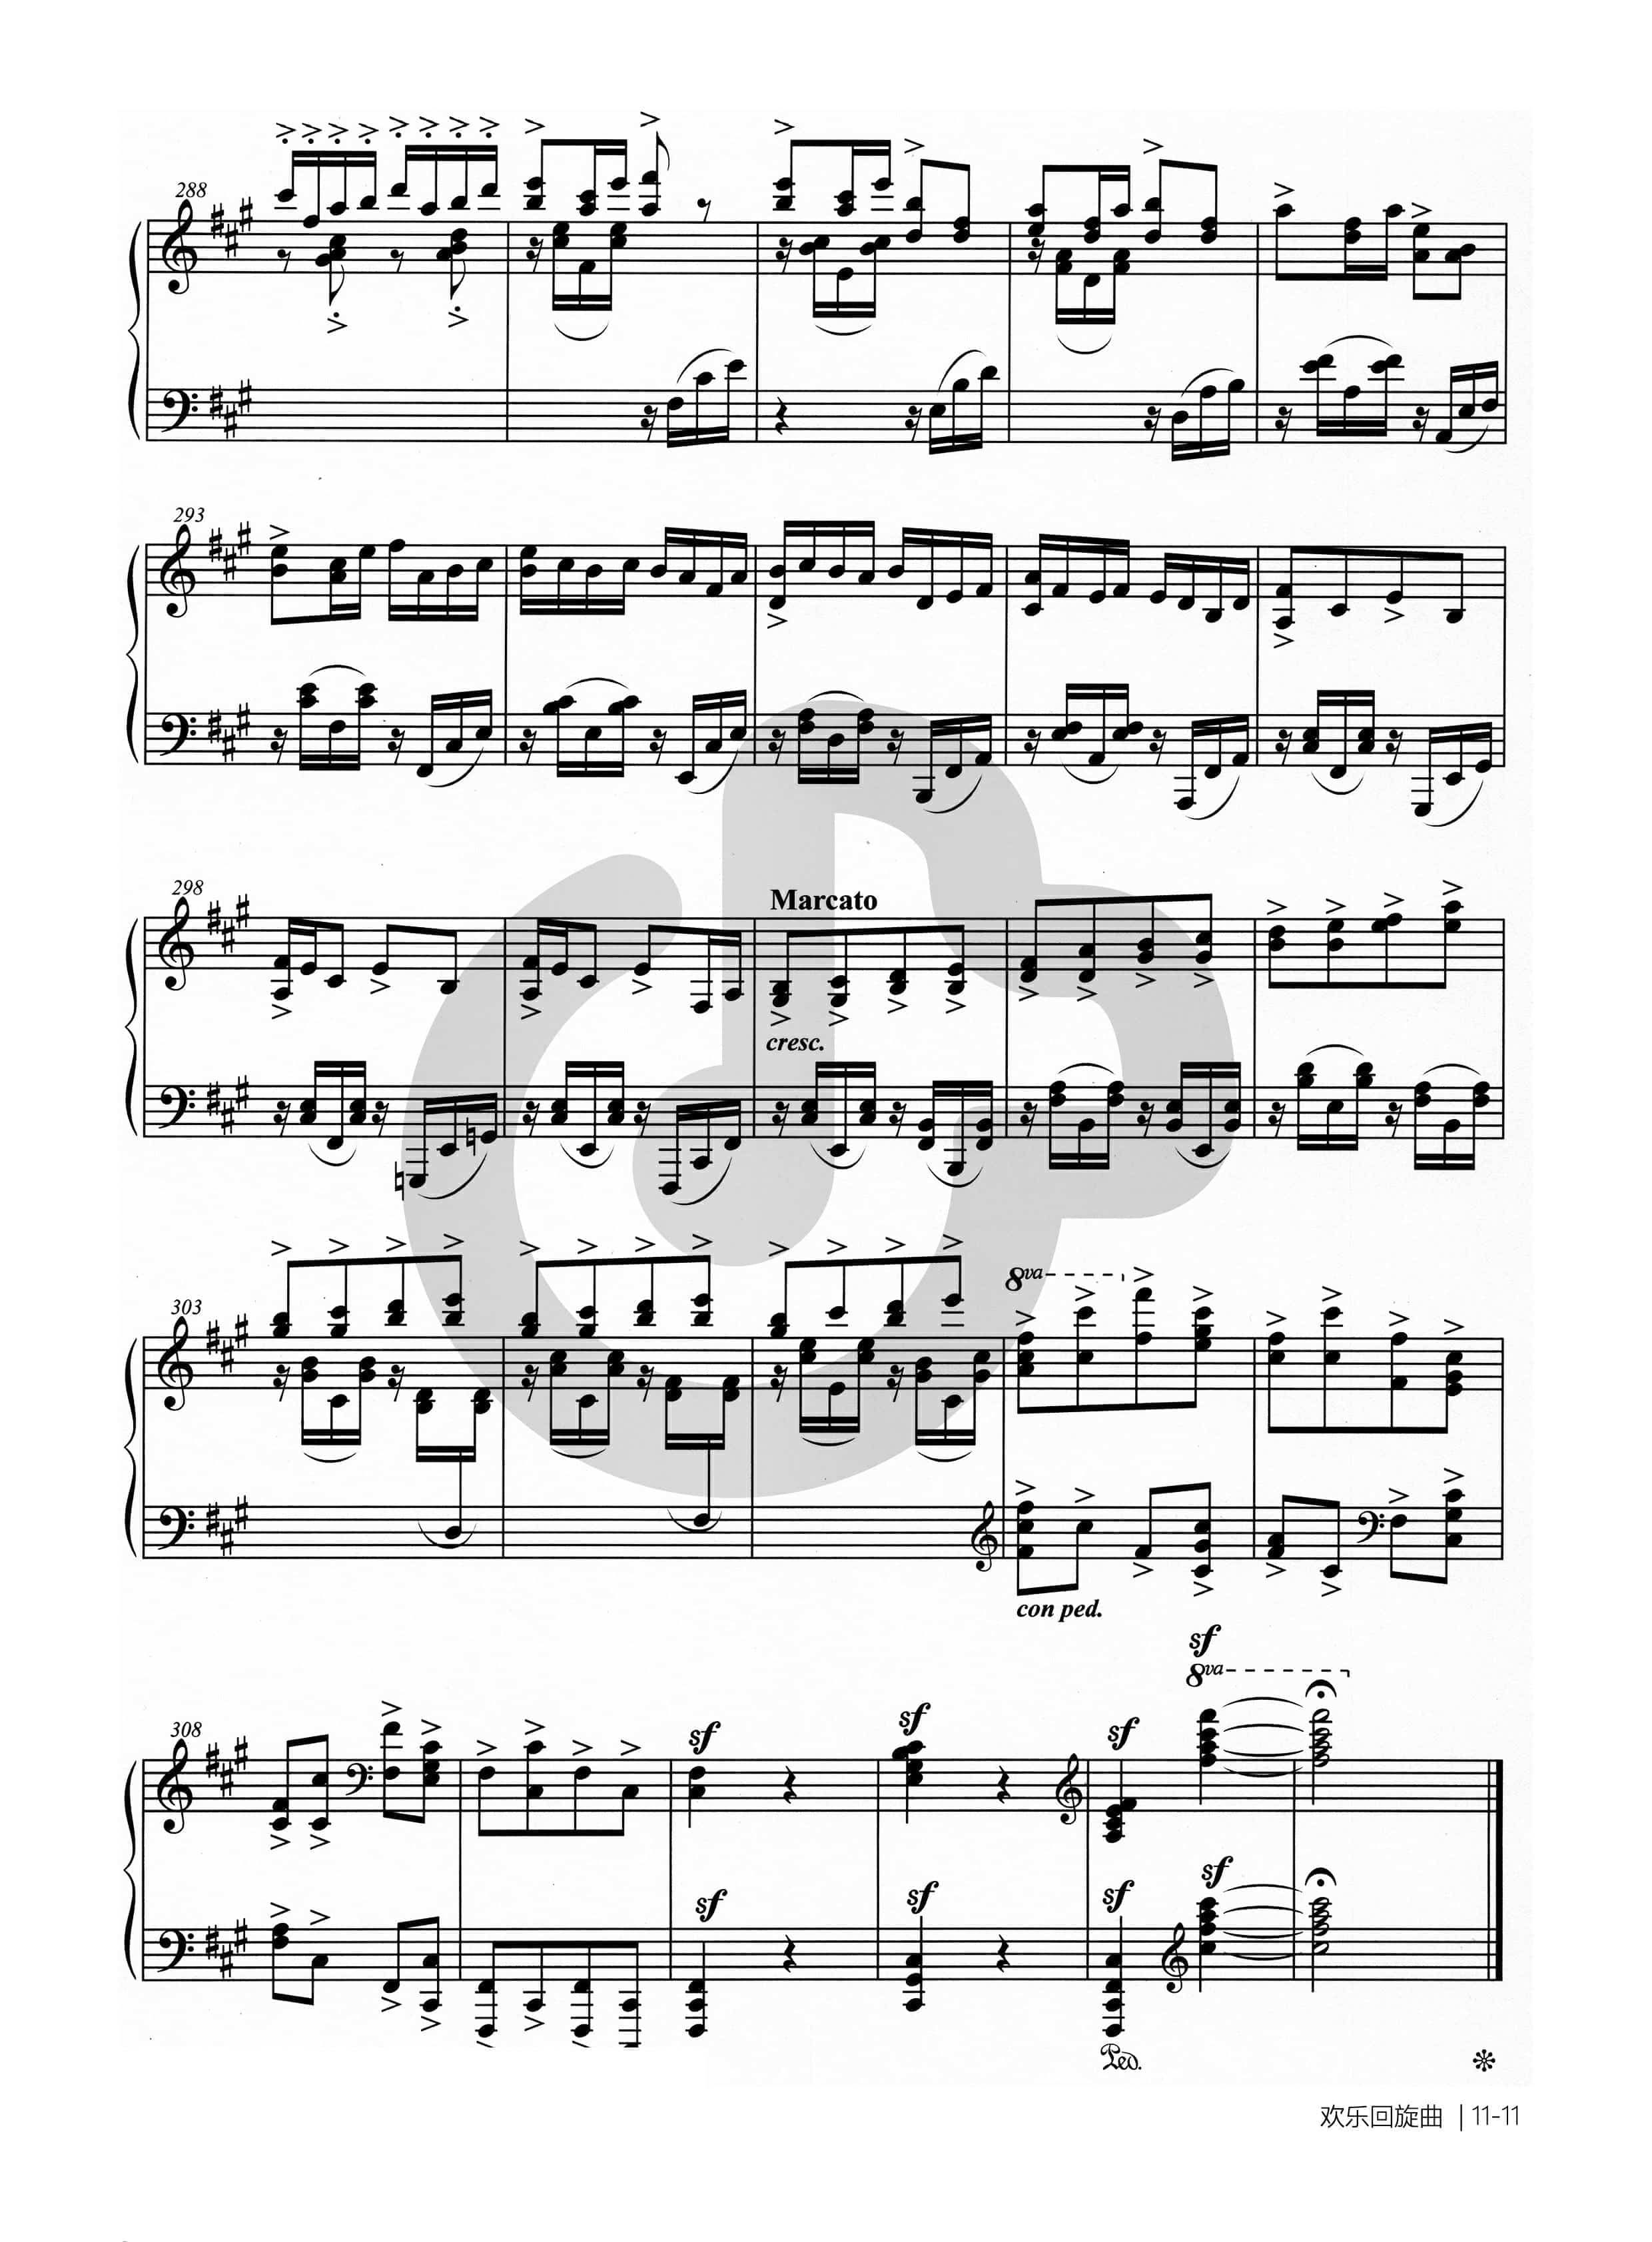 钢琴谱欢乐回旋曲-11